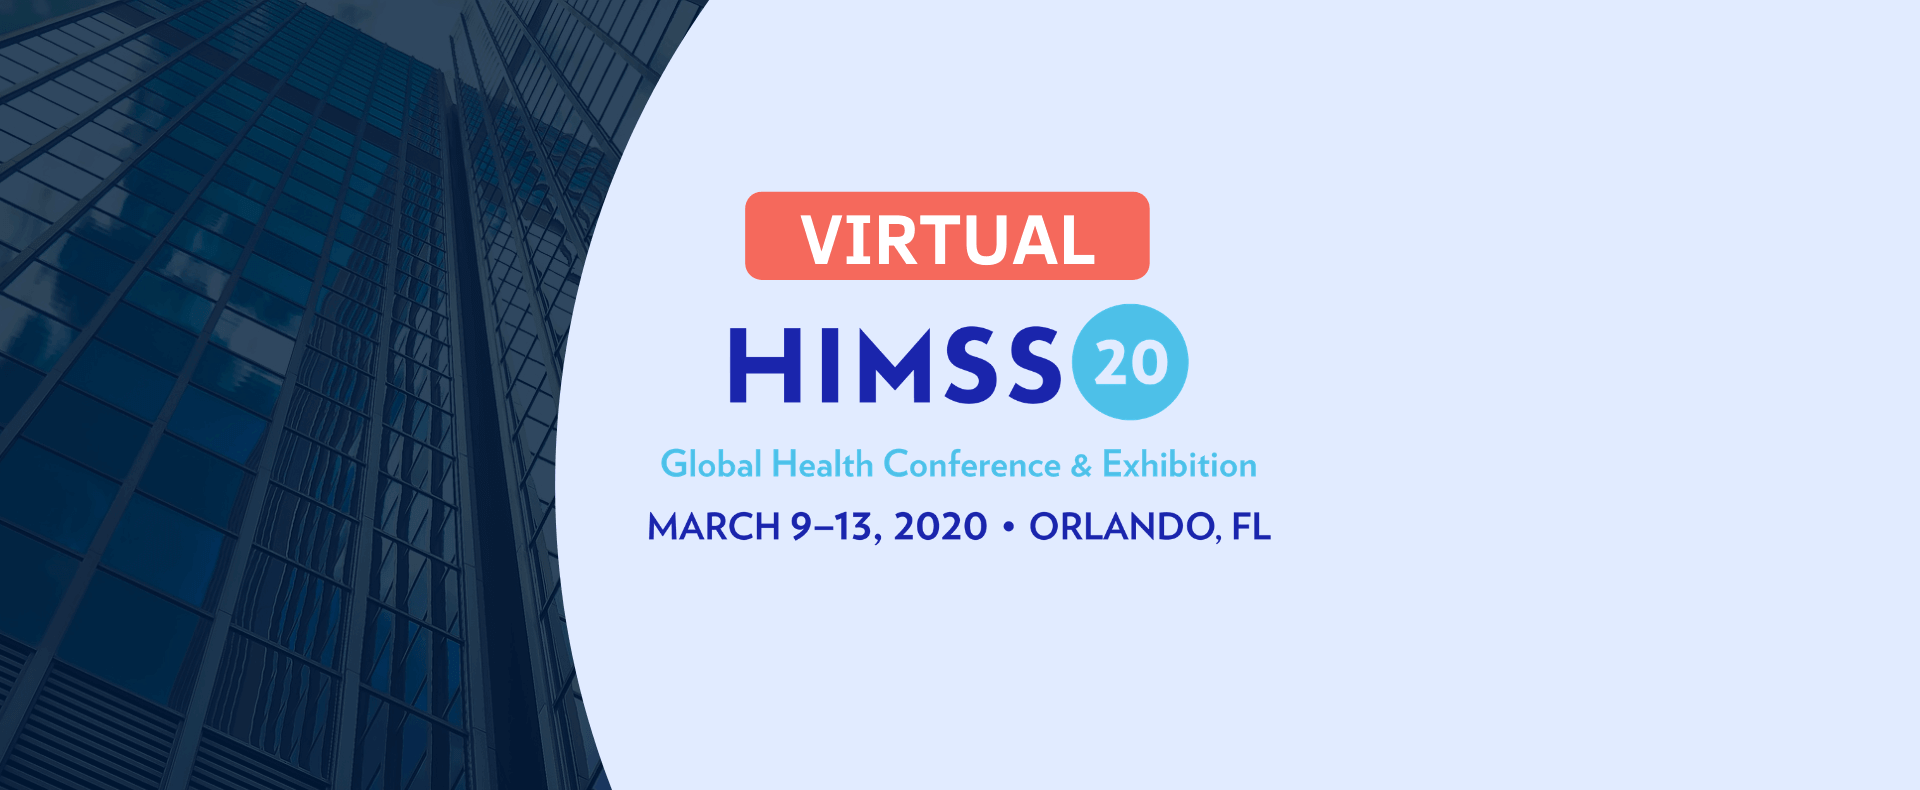 Virtual HIMSS 2020 landing page banner